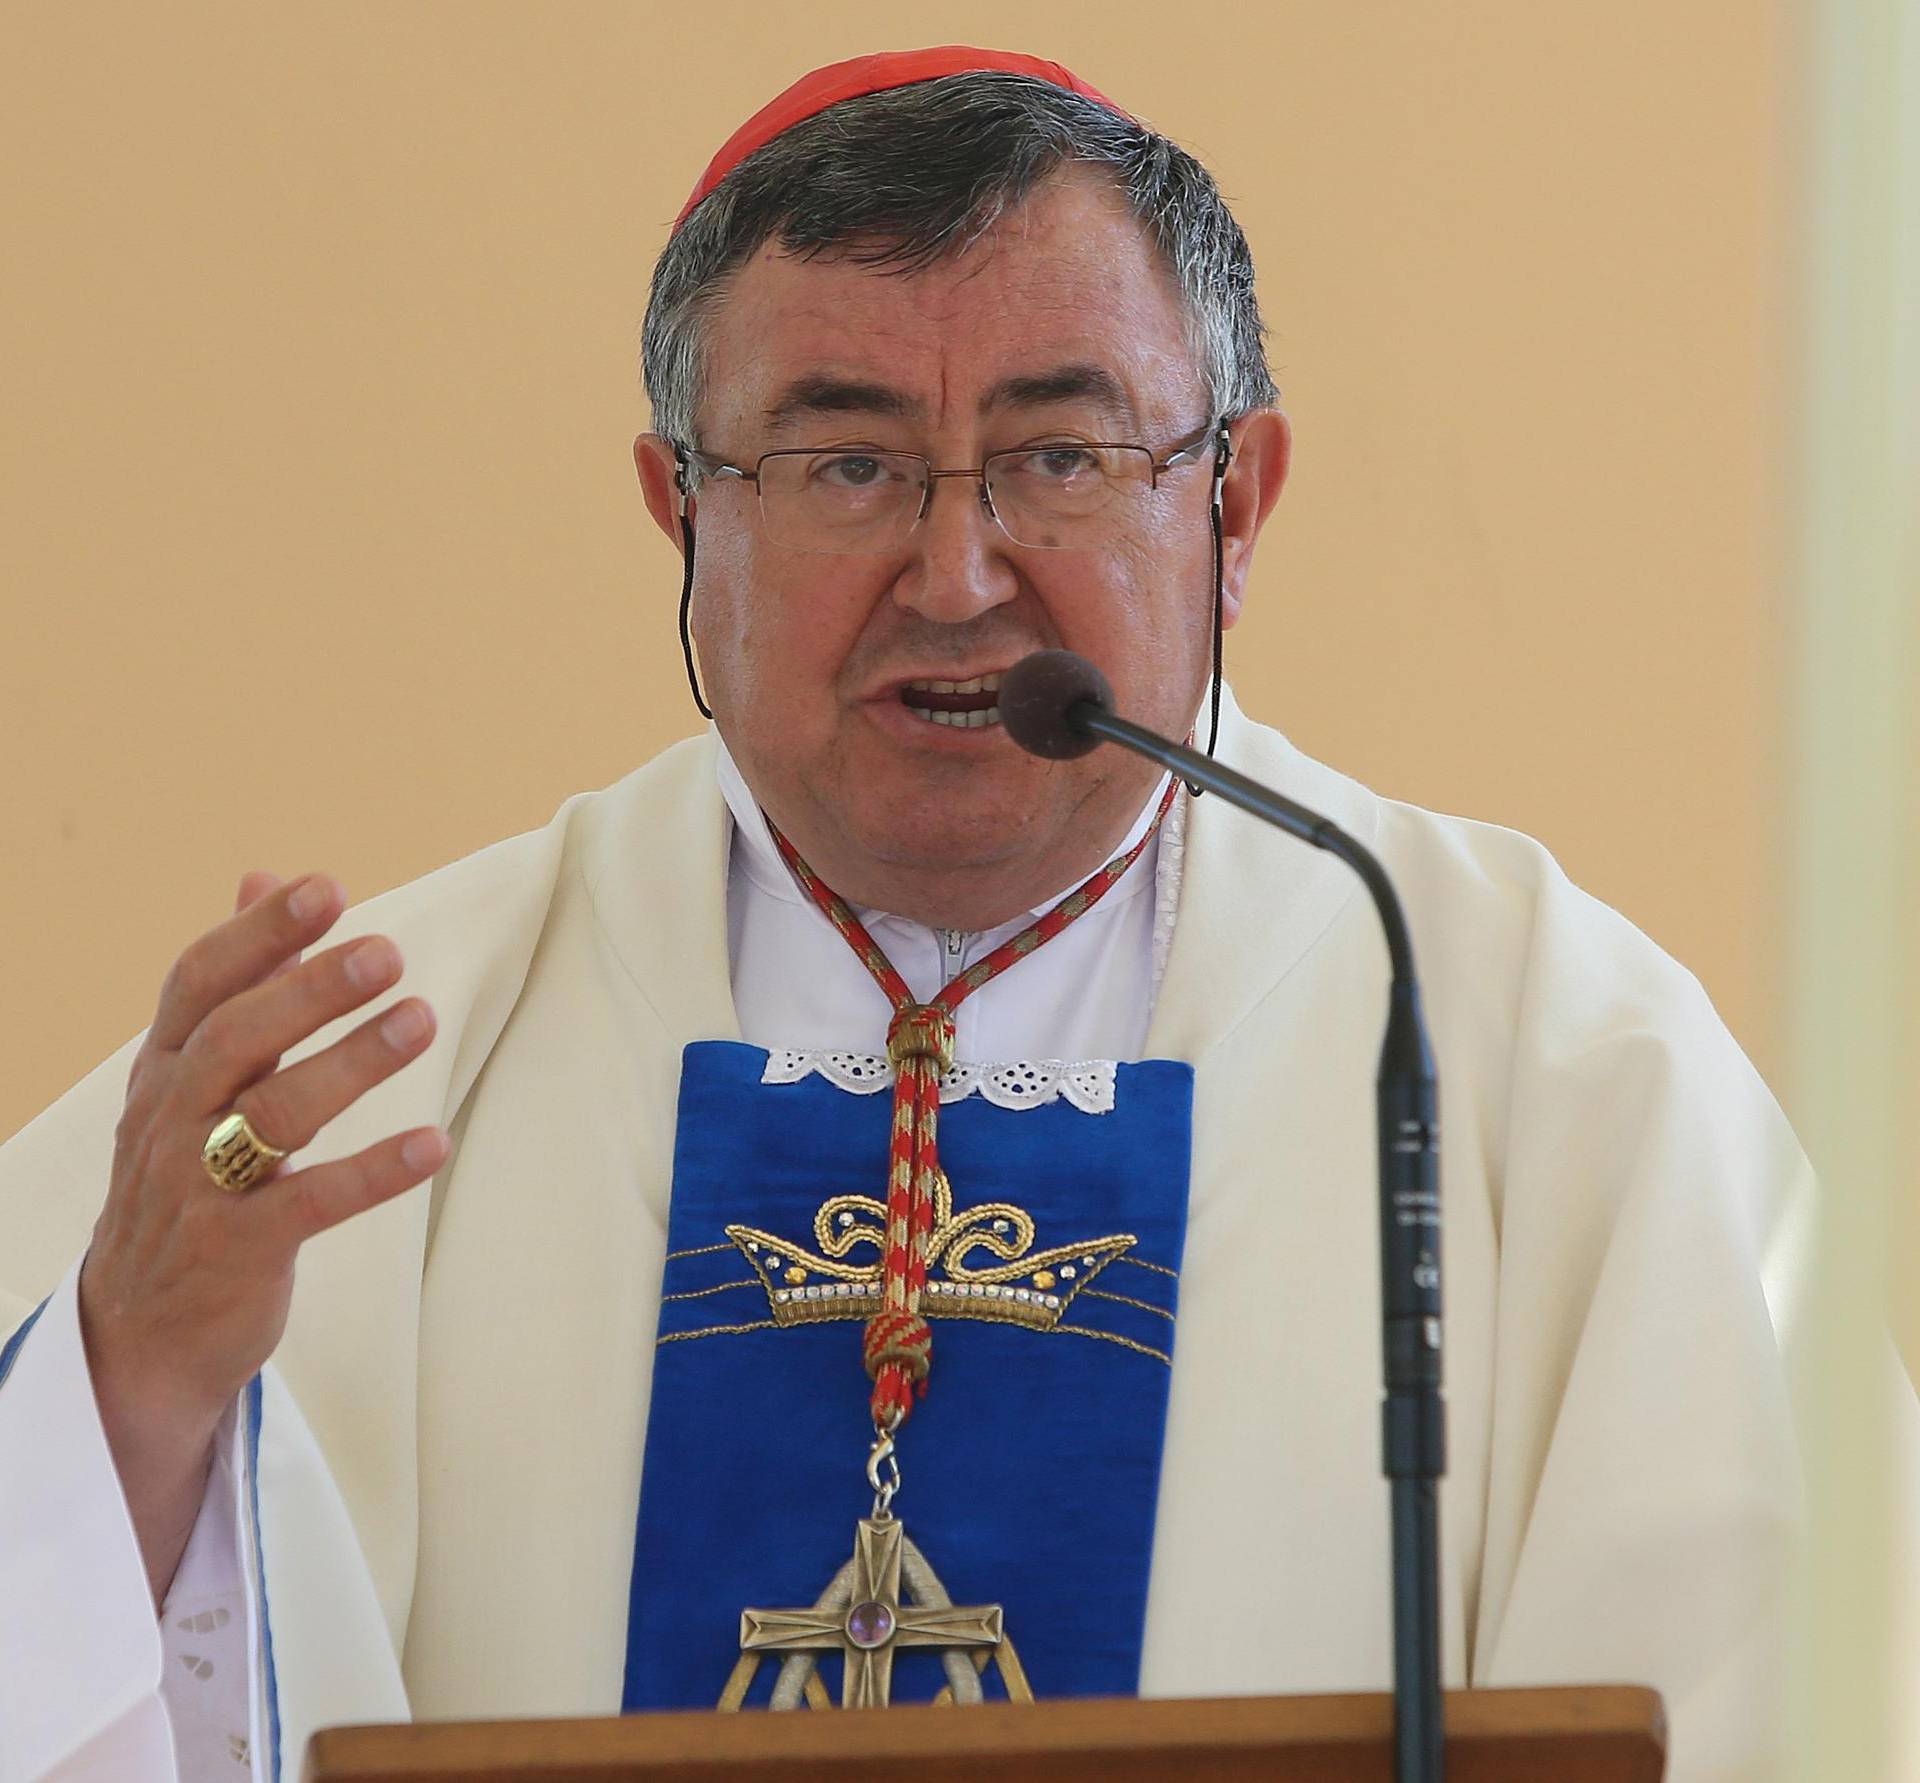 Kardinal Puljić: Ljudi iseljavaju zbog korupcije i nejednakosti